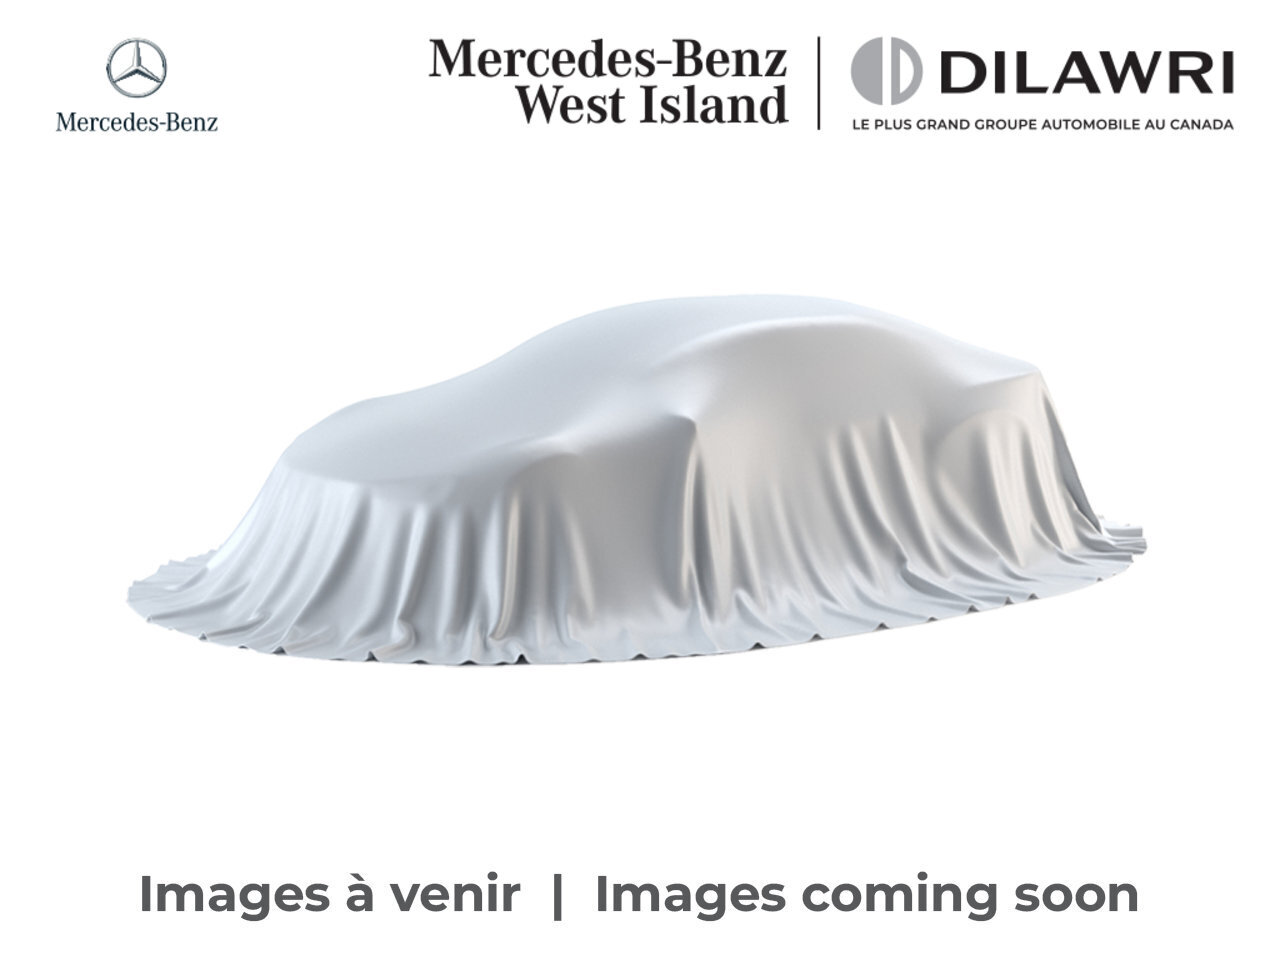 2020 Mercedes-Benz CLA250 4MATIC Coupe * Certifié * Certified * Premium * Ni